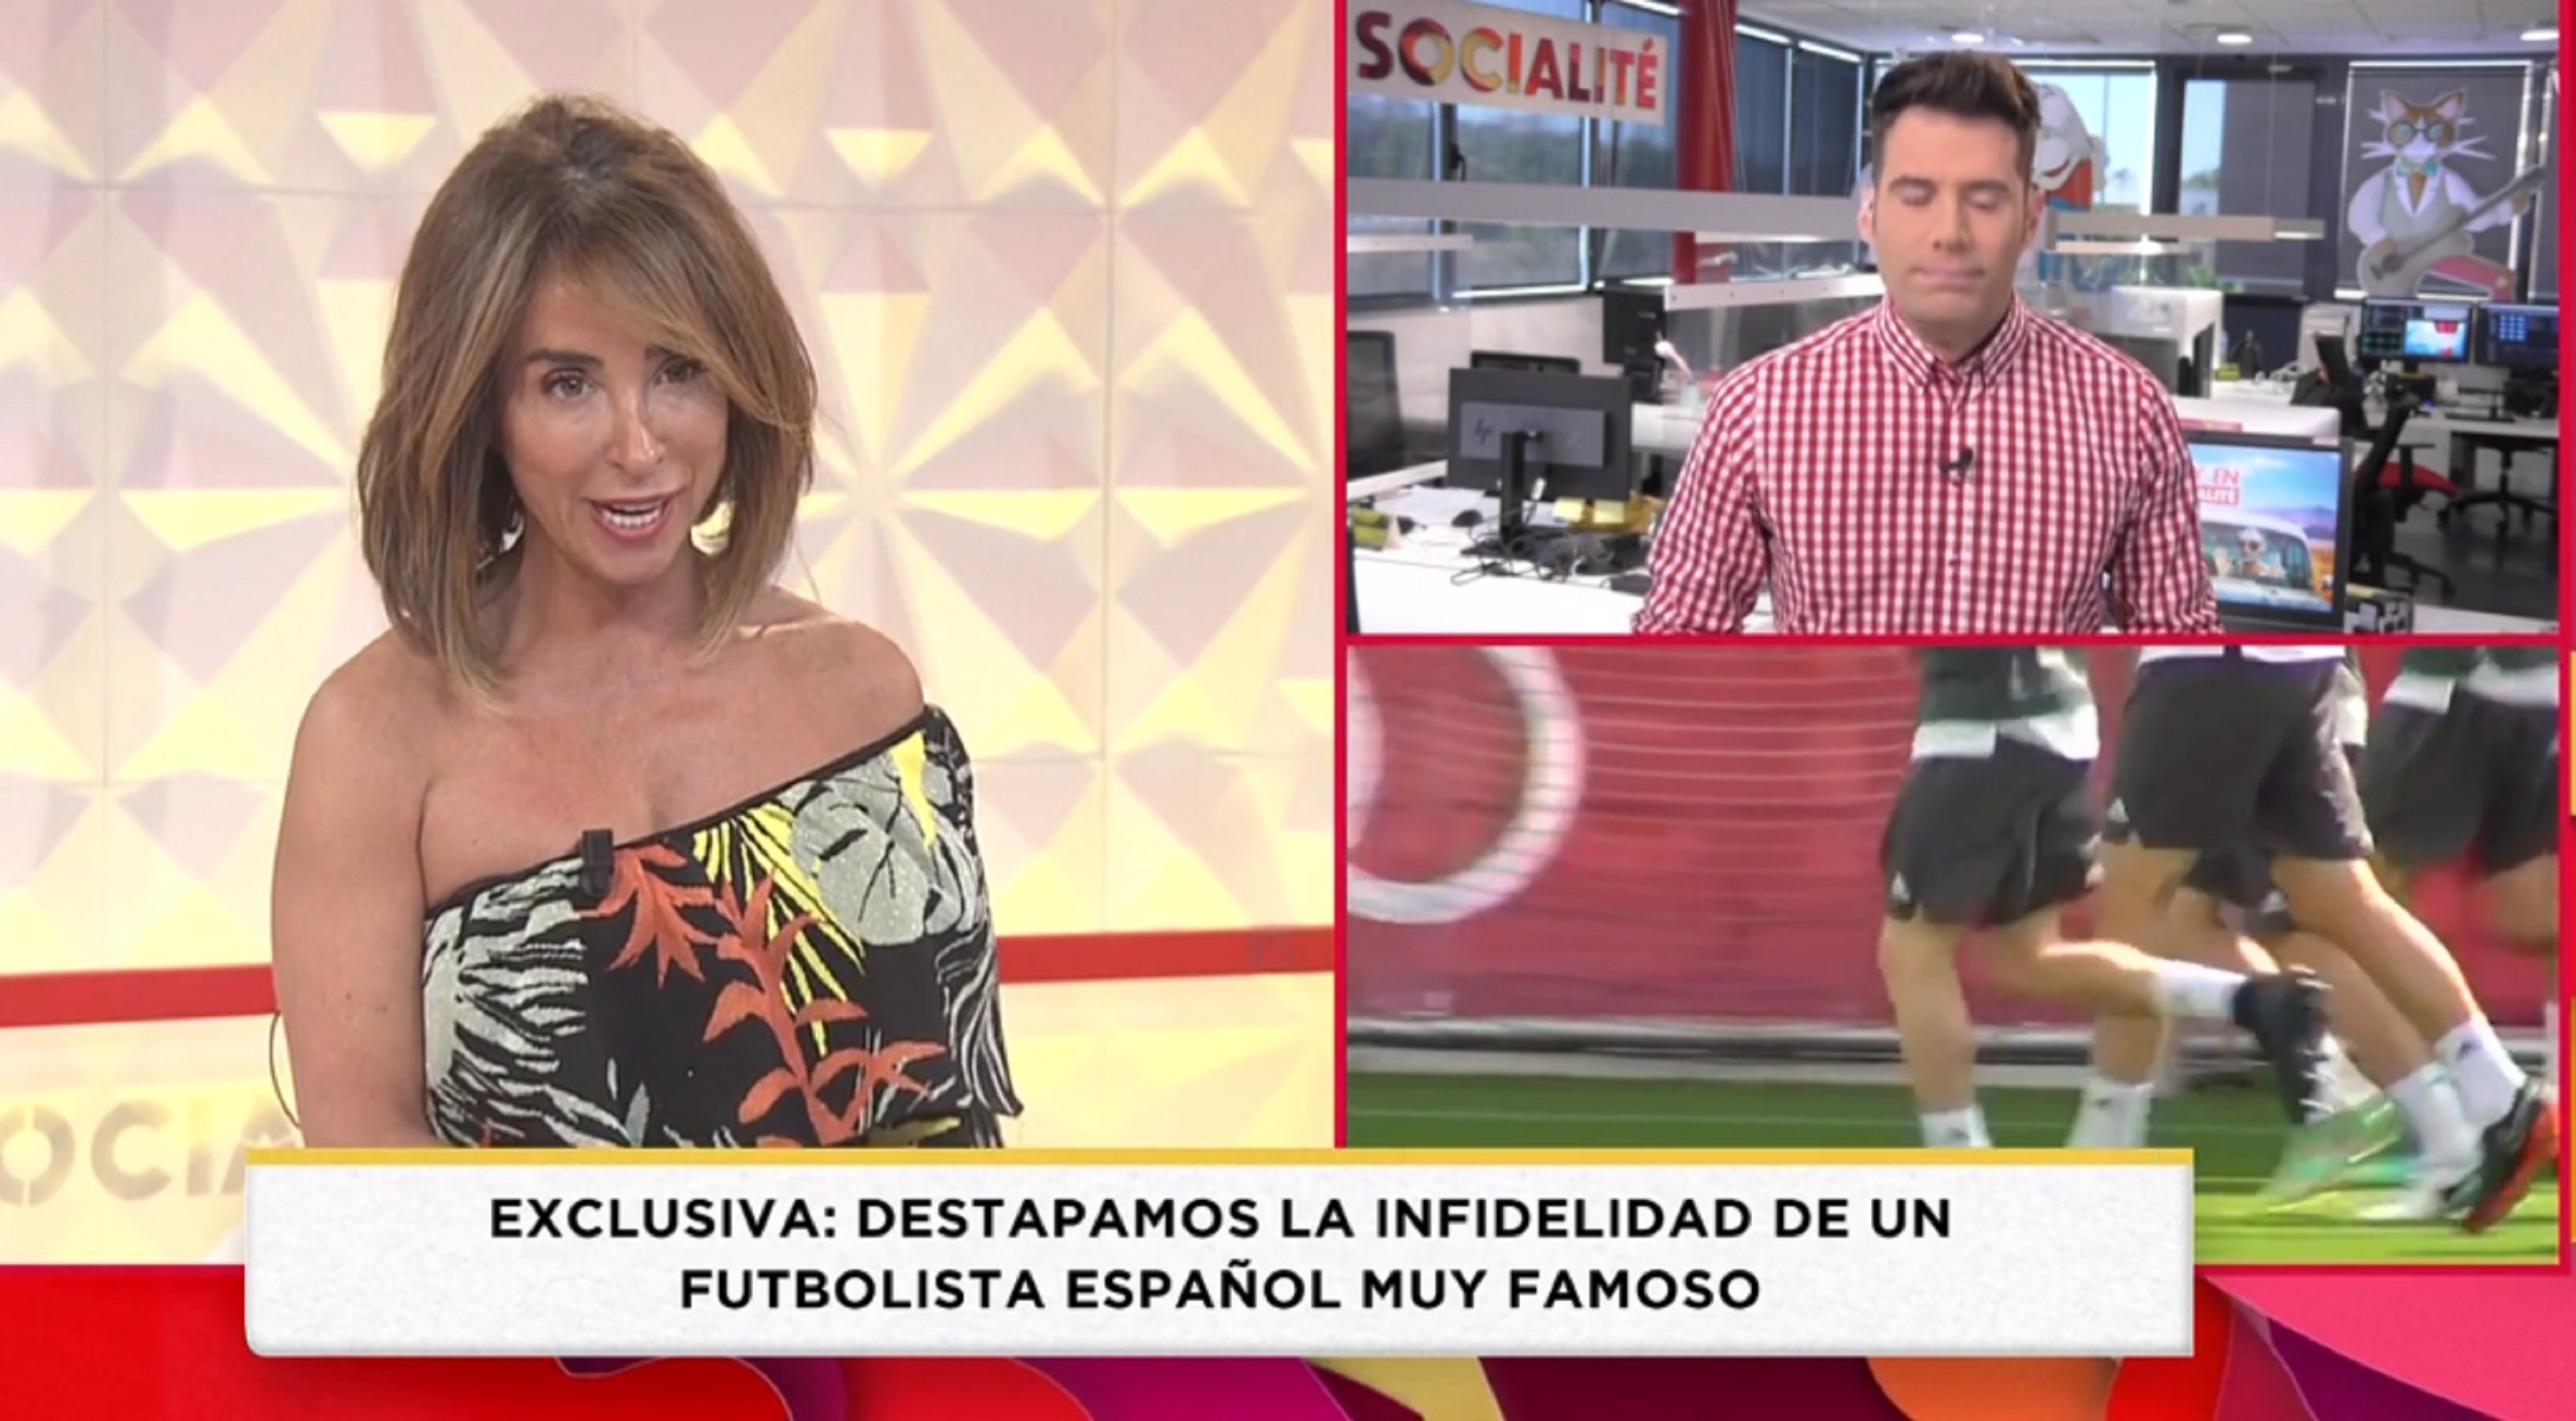 Campanya contra Telecinco per l'exclusiva del futbolista famós infidel